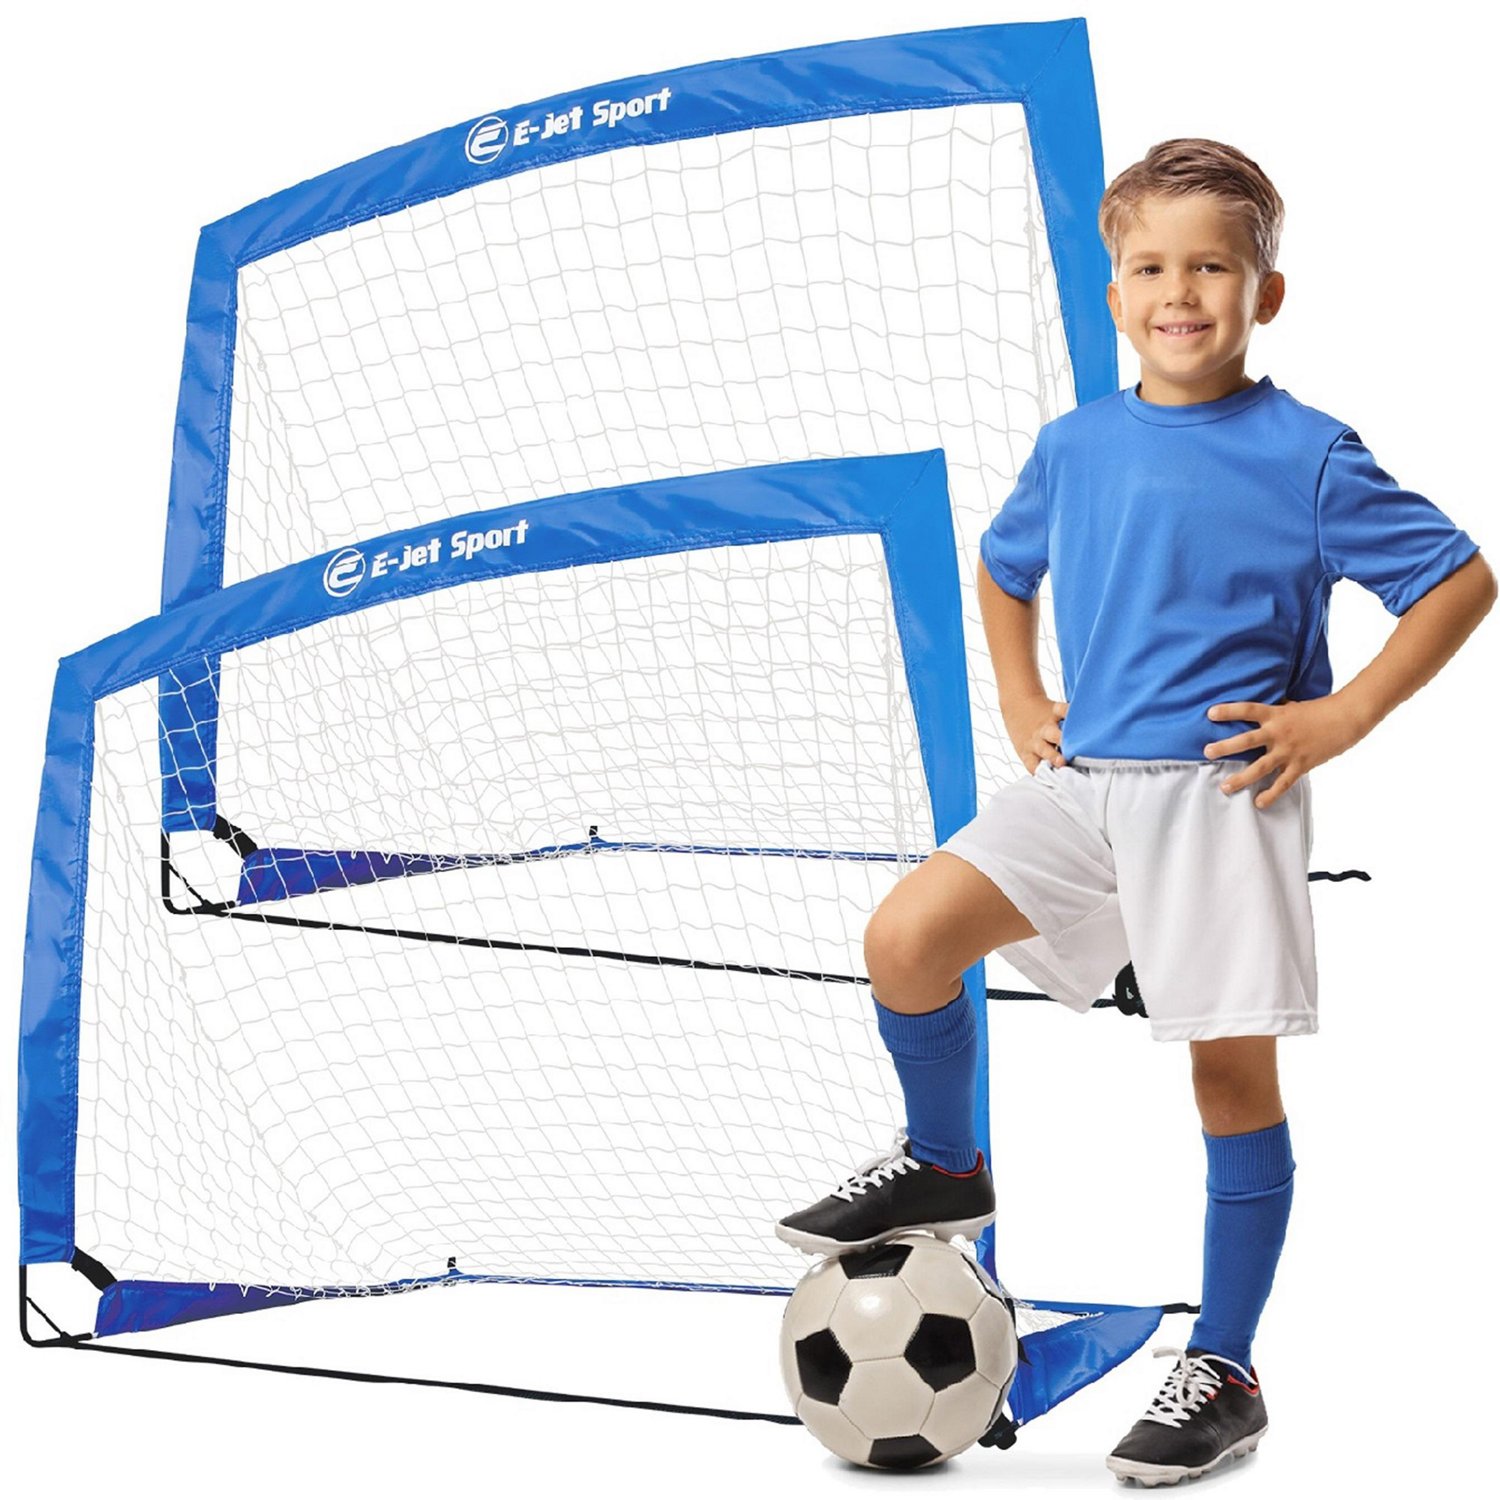 E-Jet Sport 4 ft x 3 ft x 3 ft Portable Soccer Goals 2-Pack